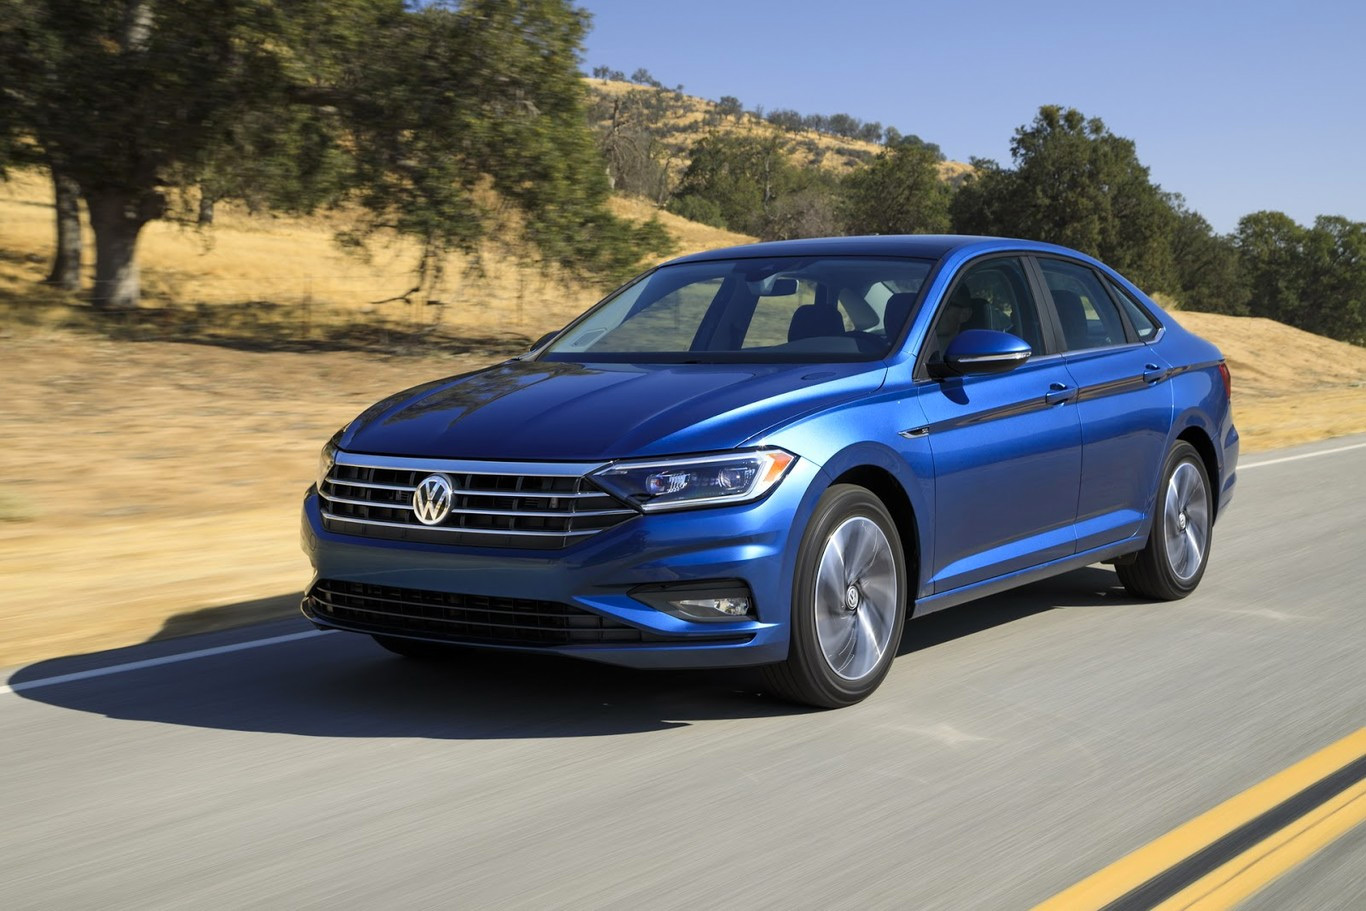 Nuevo Volkswagen Jetta 2019 exterior lateral y frente en carretera